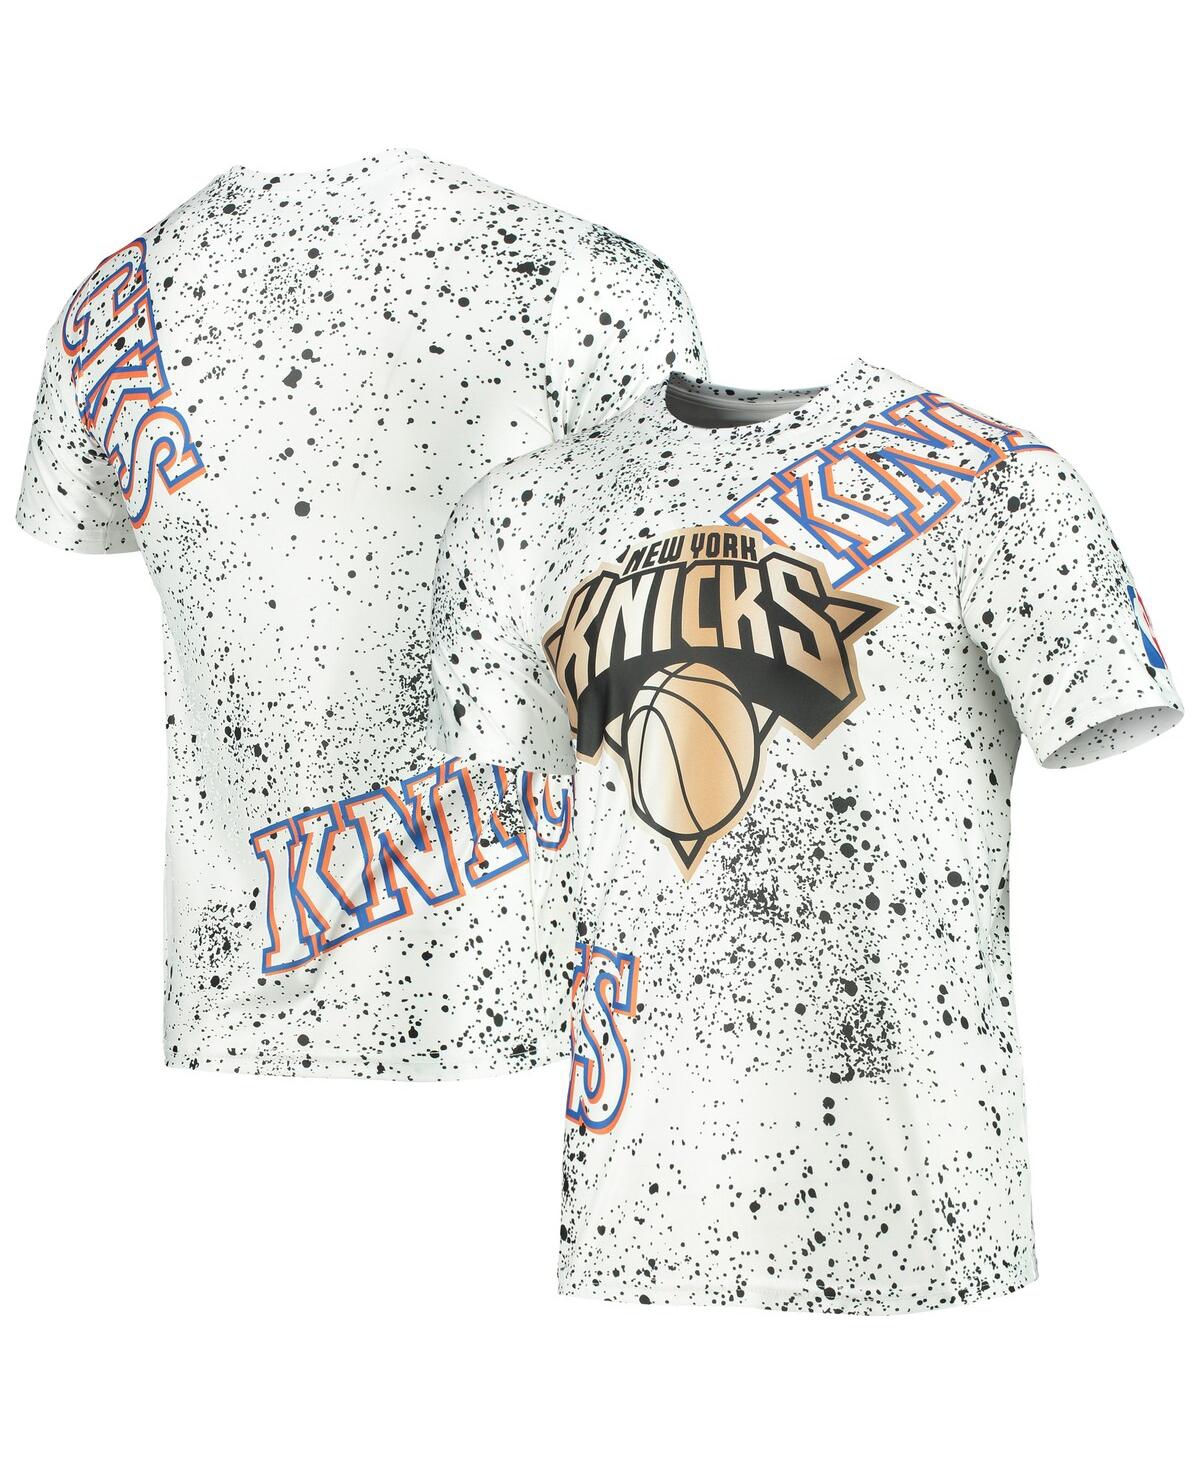 Men's White New York Knicks Gold Foil Splatter Print T-shirt - White